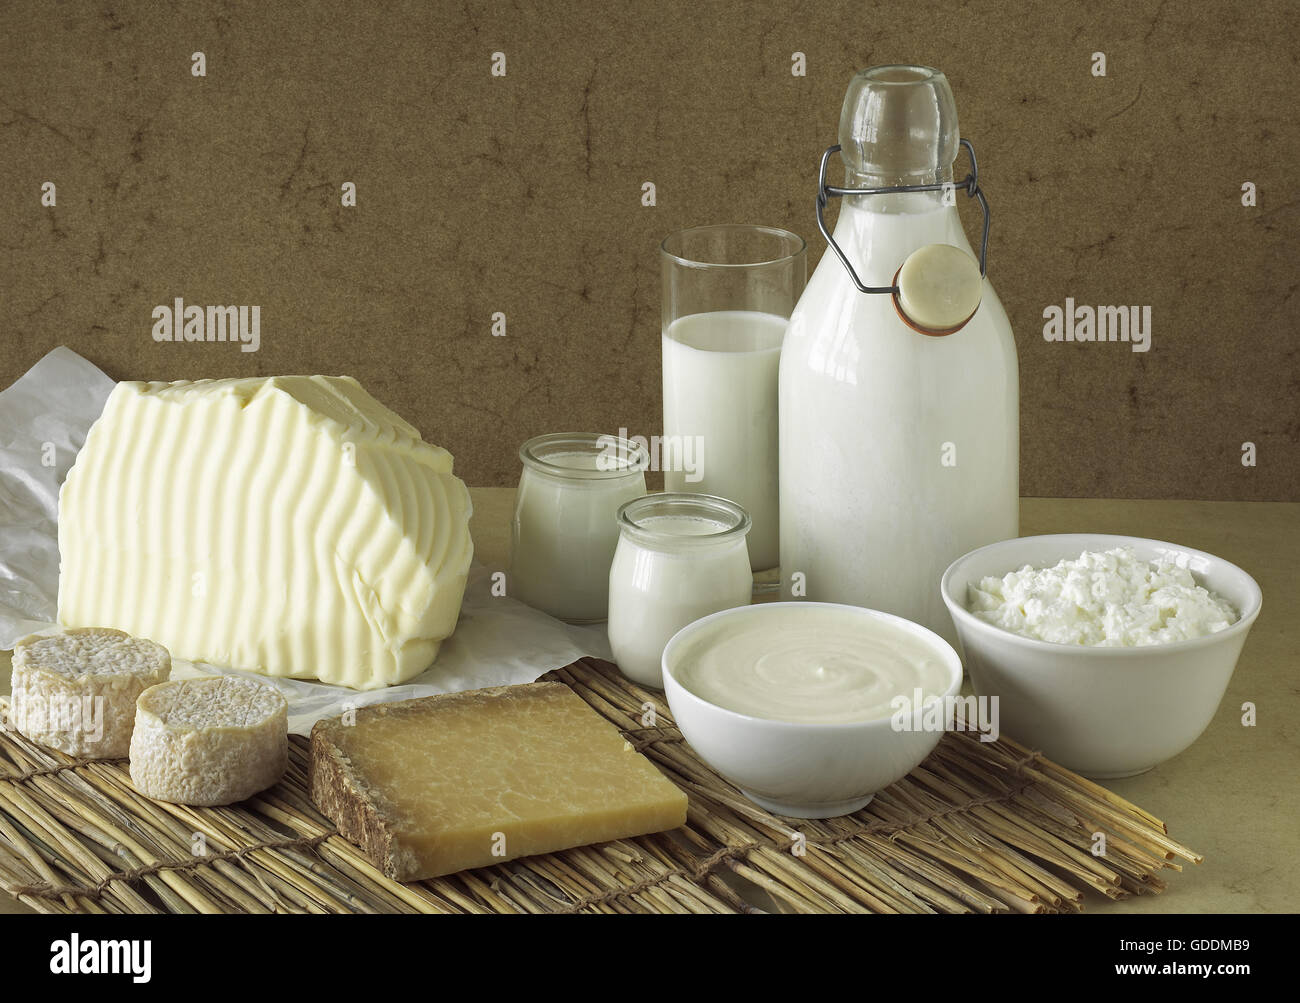 Les produits laitiers, le beurre, le lait, la crème fraîche, fromage, yogourt et fromage de chèvre et Cantal Banque D'Images